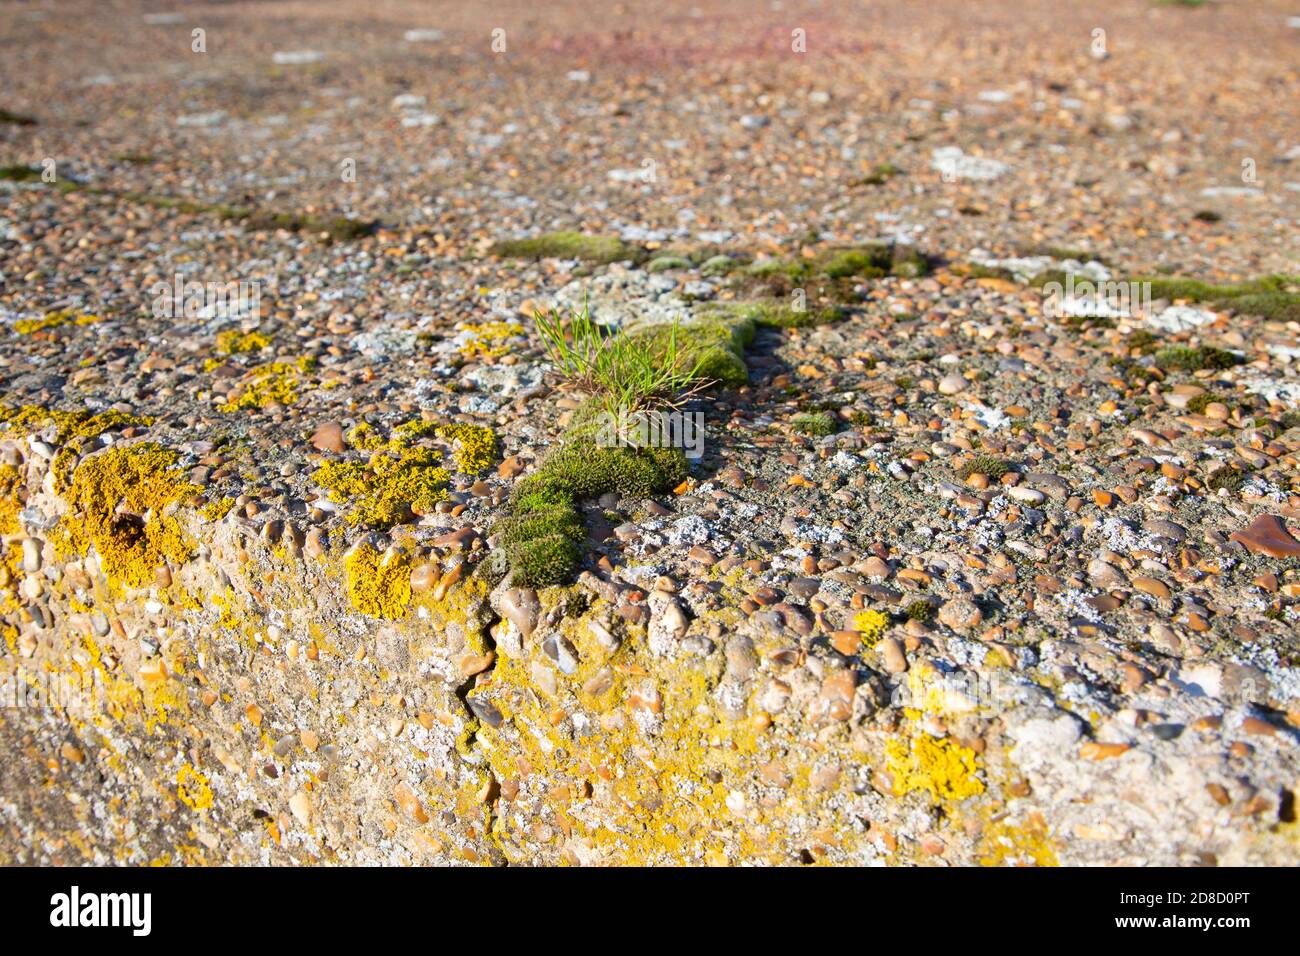 Des espèces pionnières mousent des plantes qui poussent dans des fissures dans du béton rugueux de pilpbox, Suffolk, Angleterre, Royaume-Uni Banque D'Images